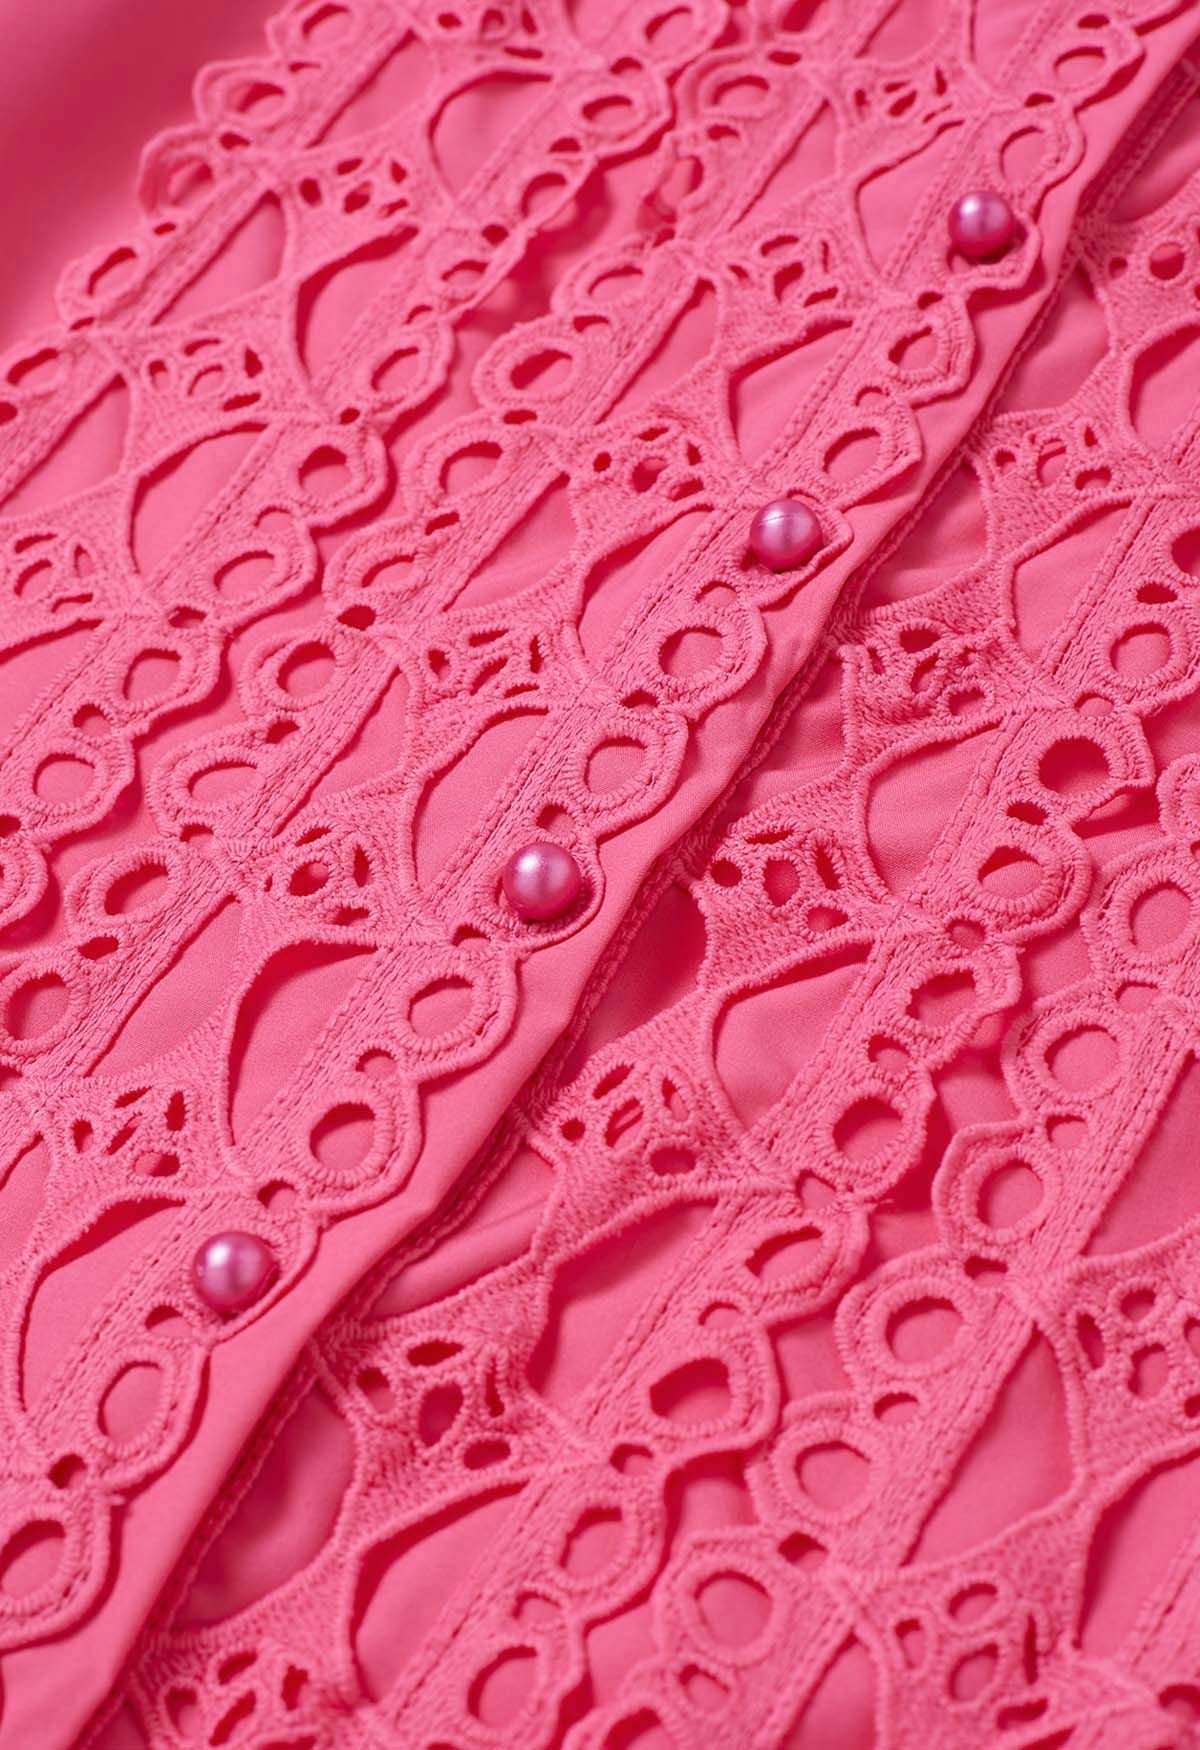 Chemise boutonnée à manches bulles et découpes exquises en rose vif